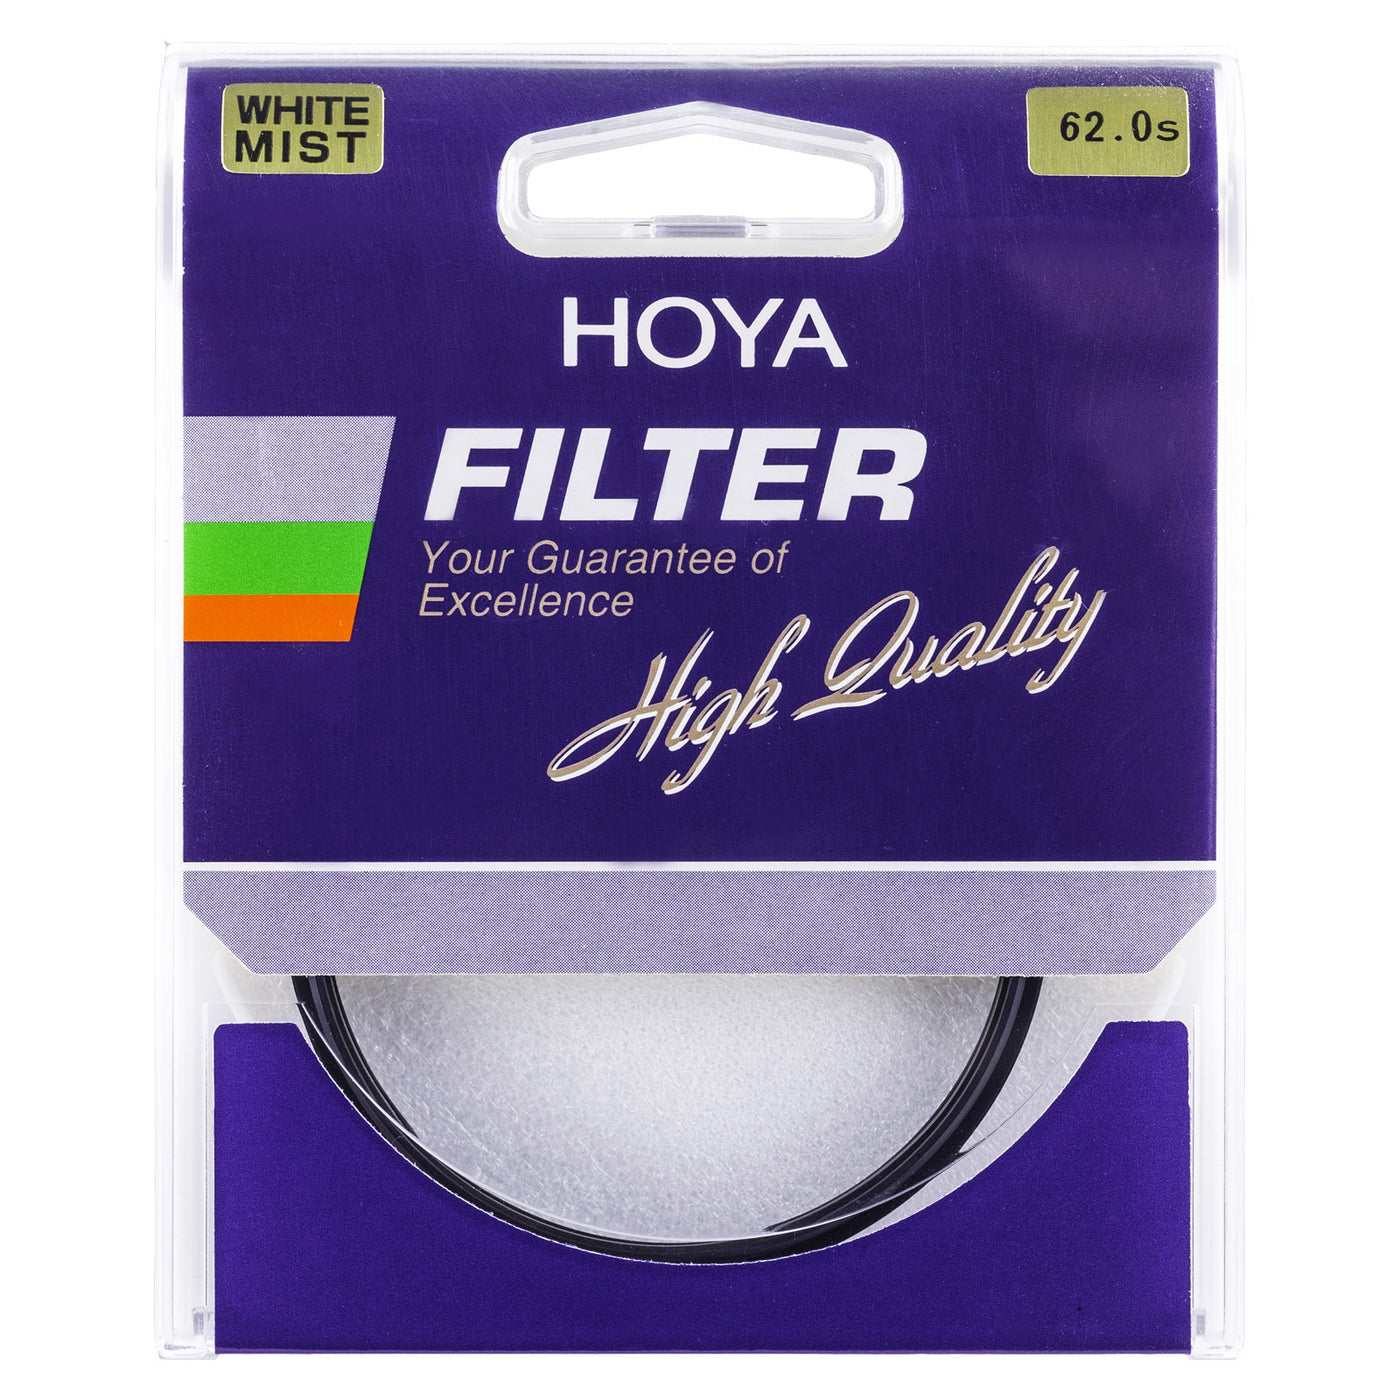 Hoya S White Mist Filter Box